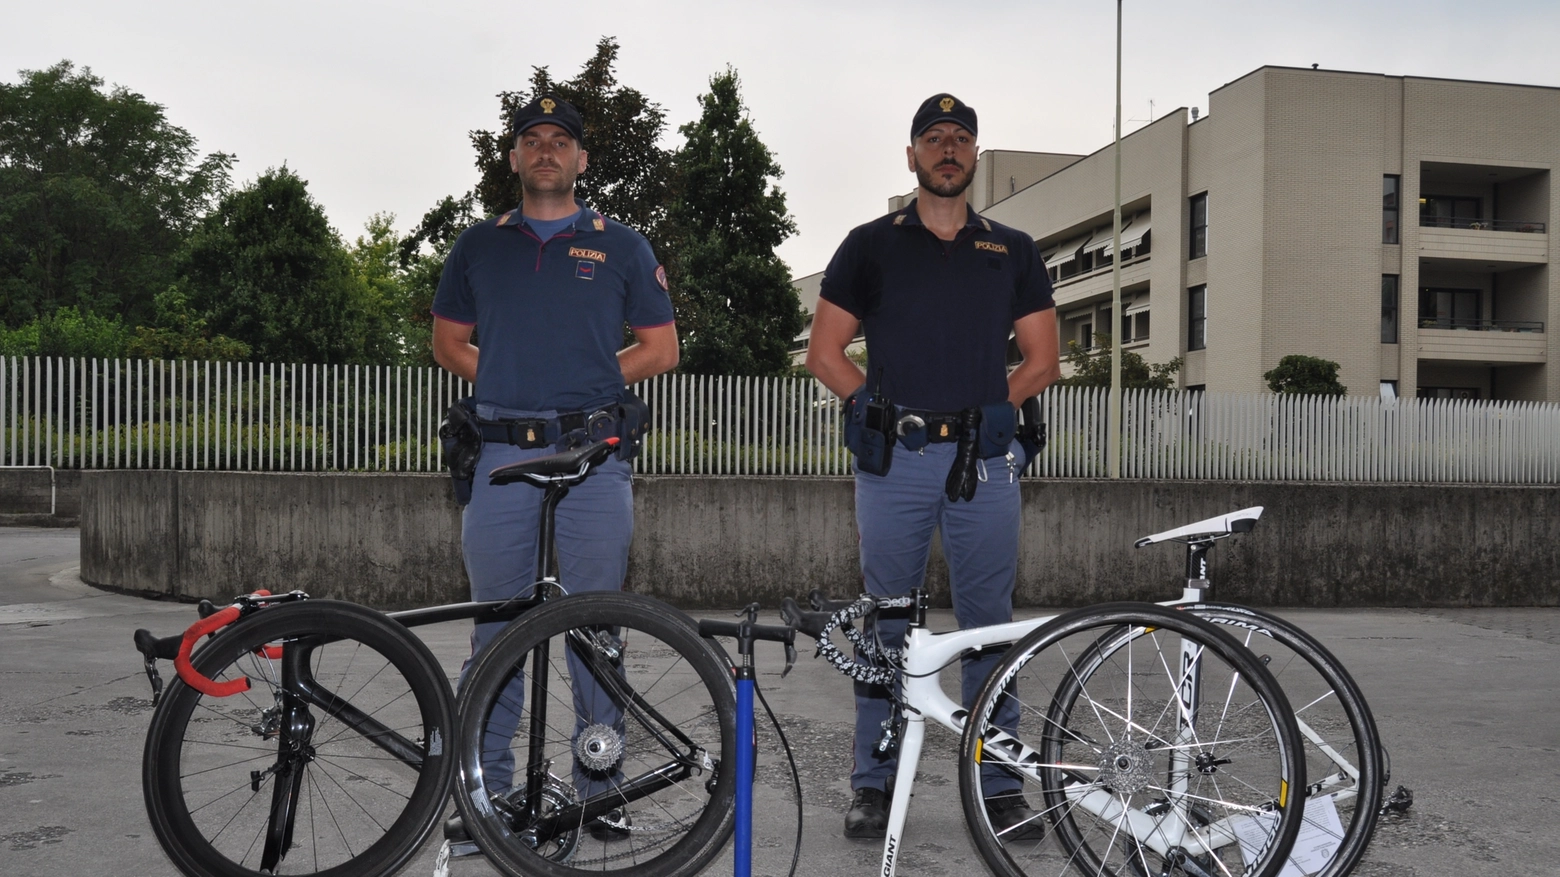 Le due biciclette sportive rubate recuperate dalla polizia di Brescia